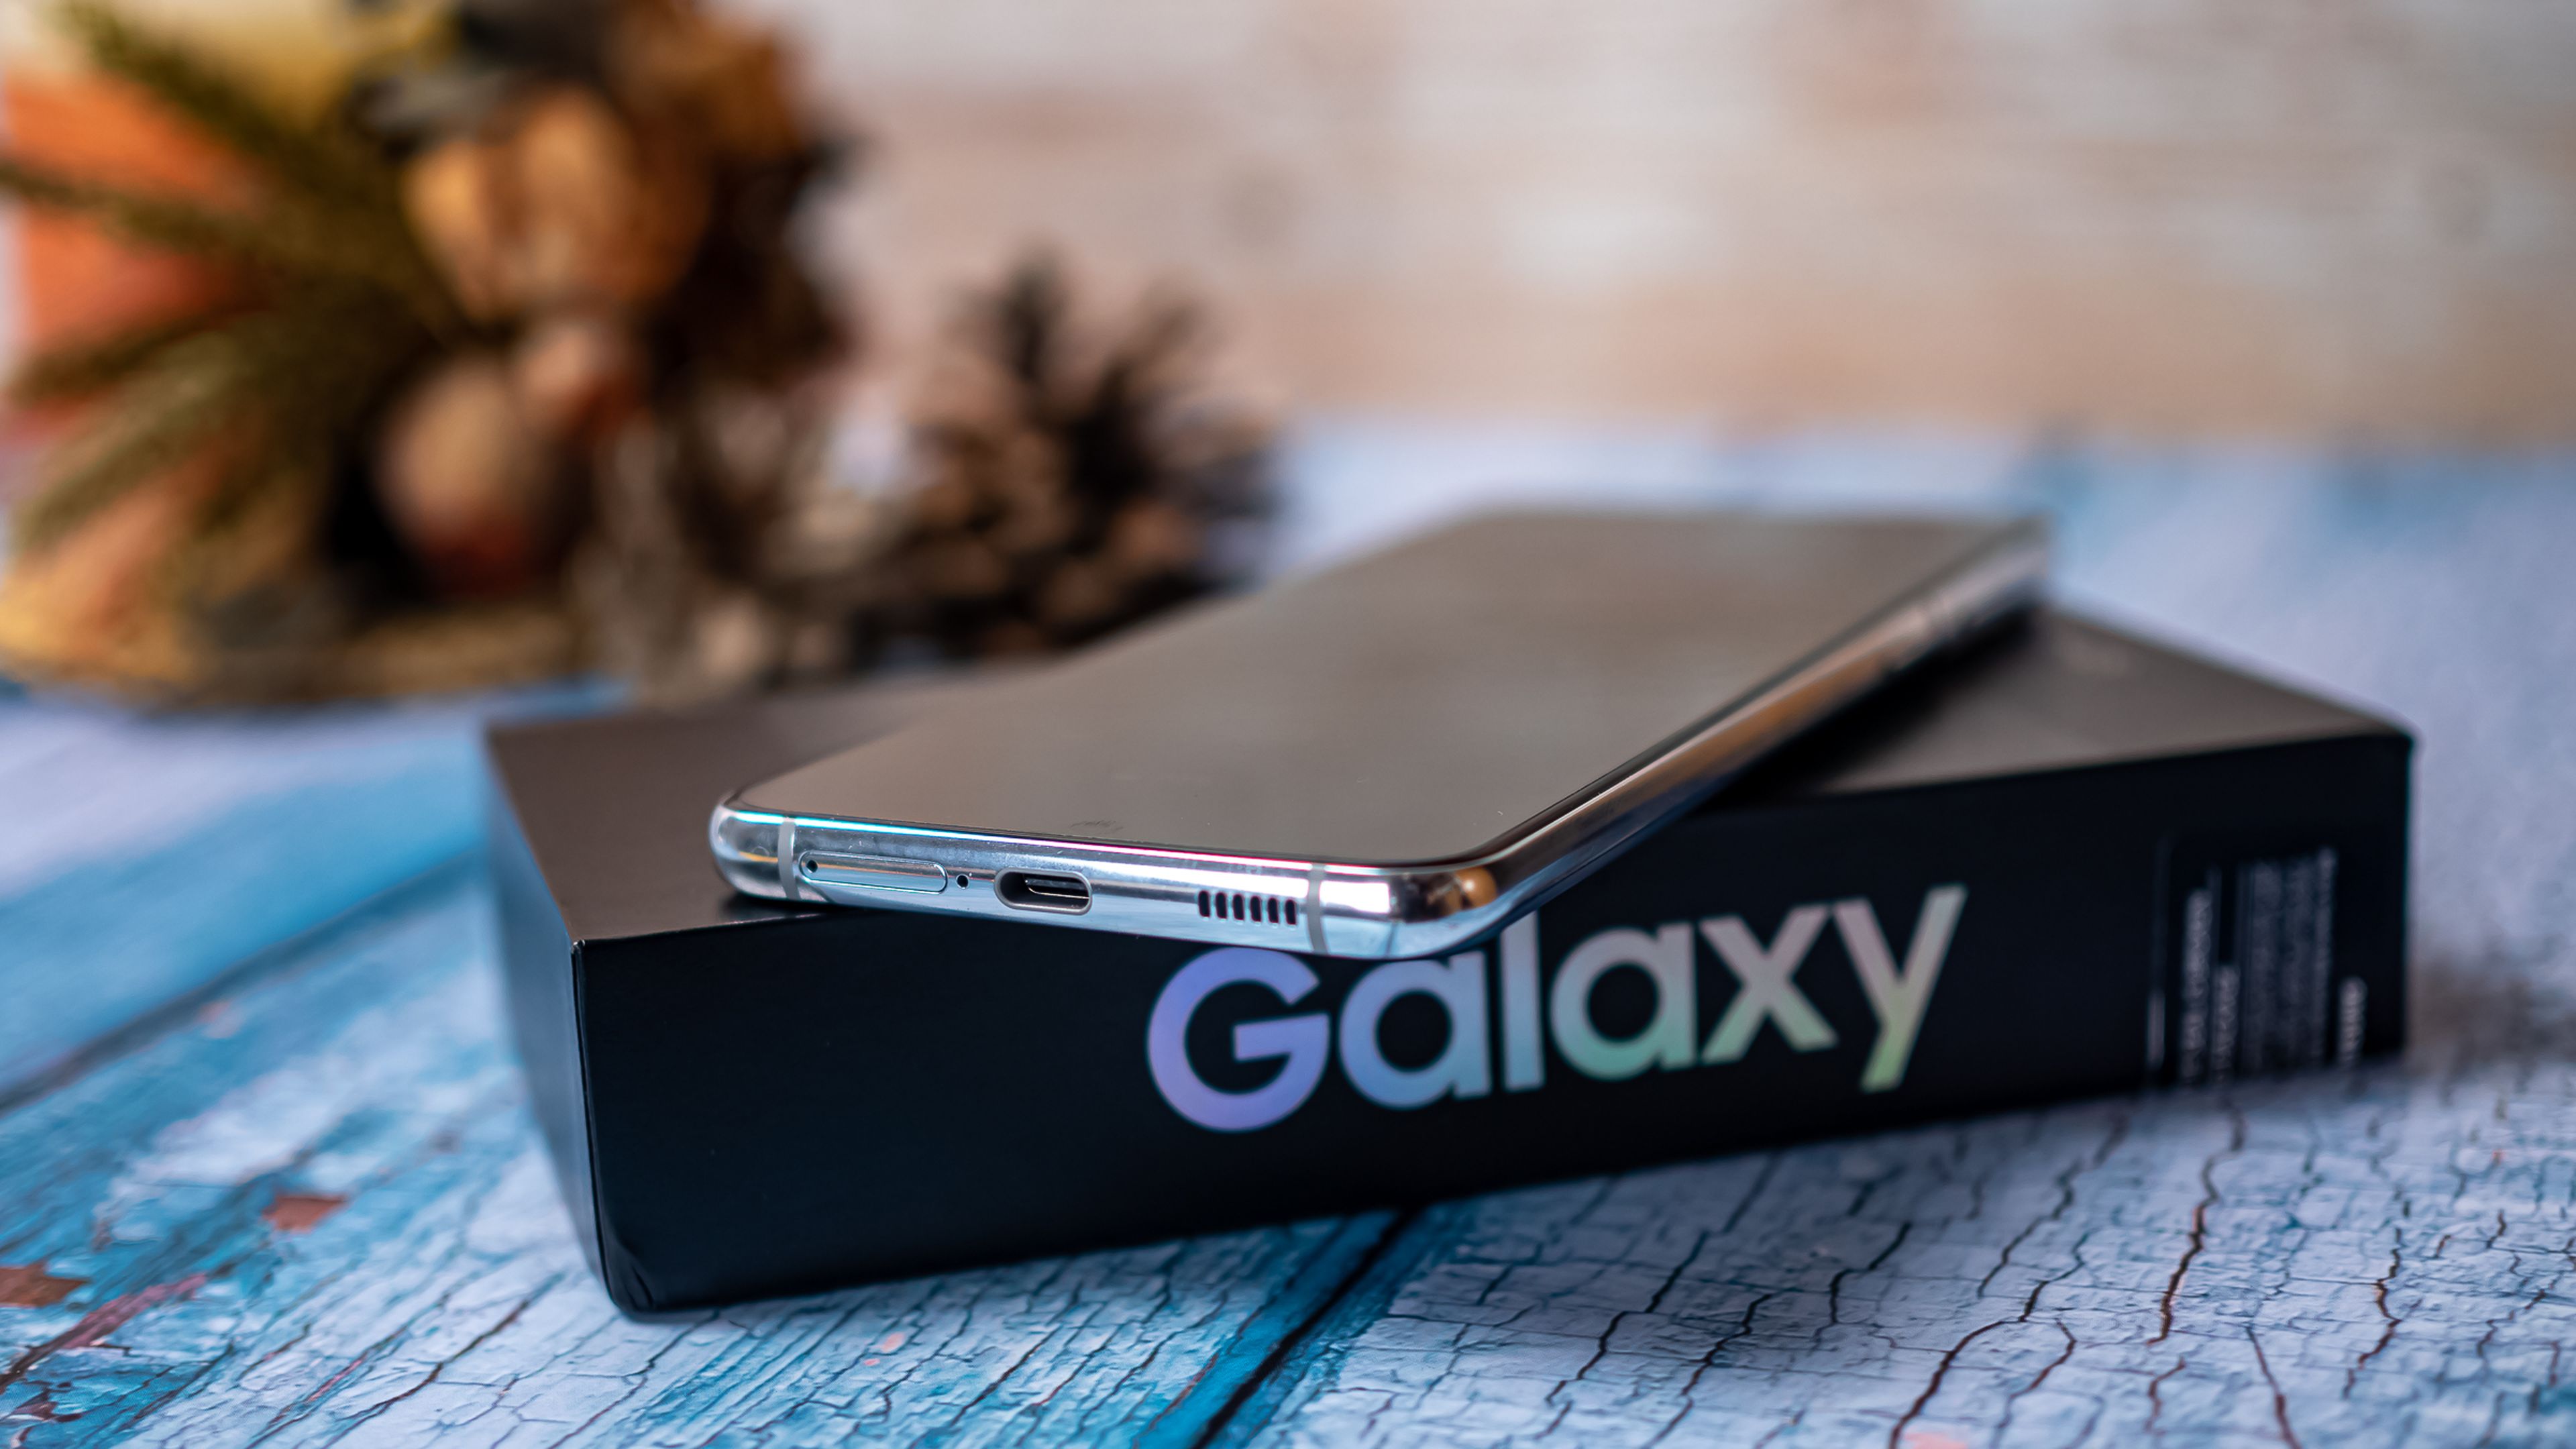 Samsung Galaxy S21+ 5G, análisis y opinión